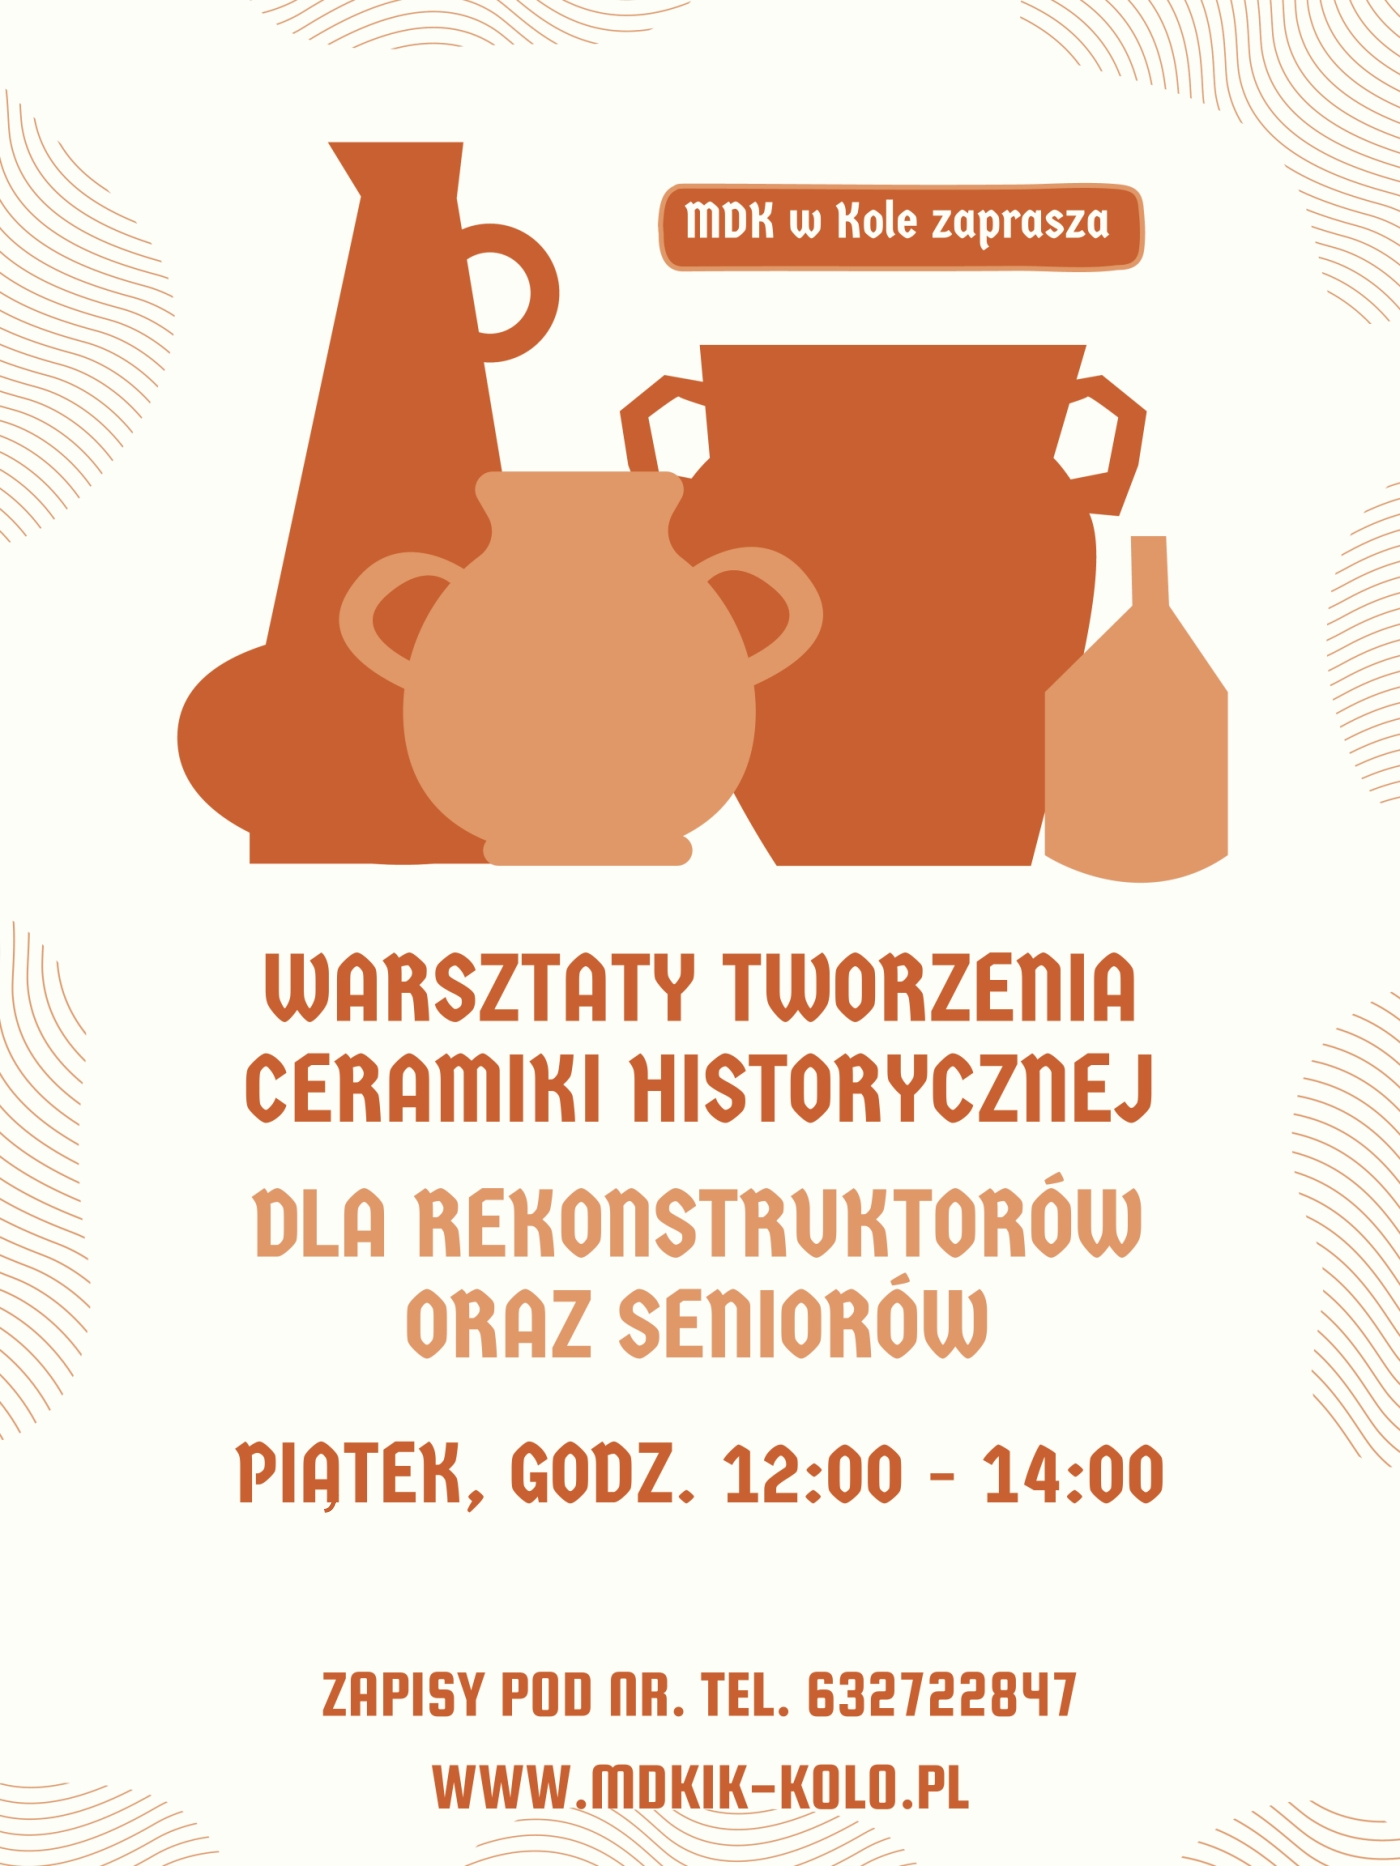 Plakat informujący o warsztatach tworzenia ceramiki historycznej w MDK w Kole